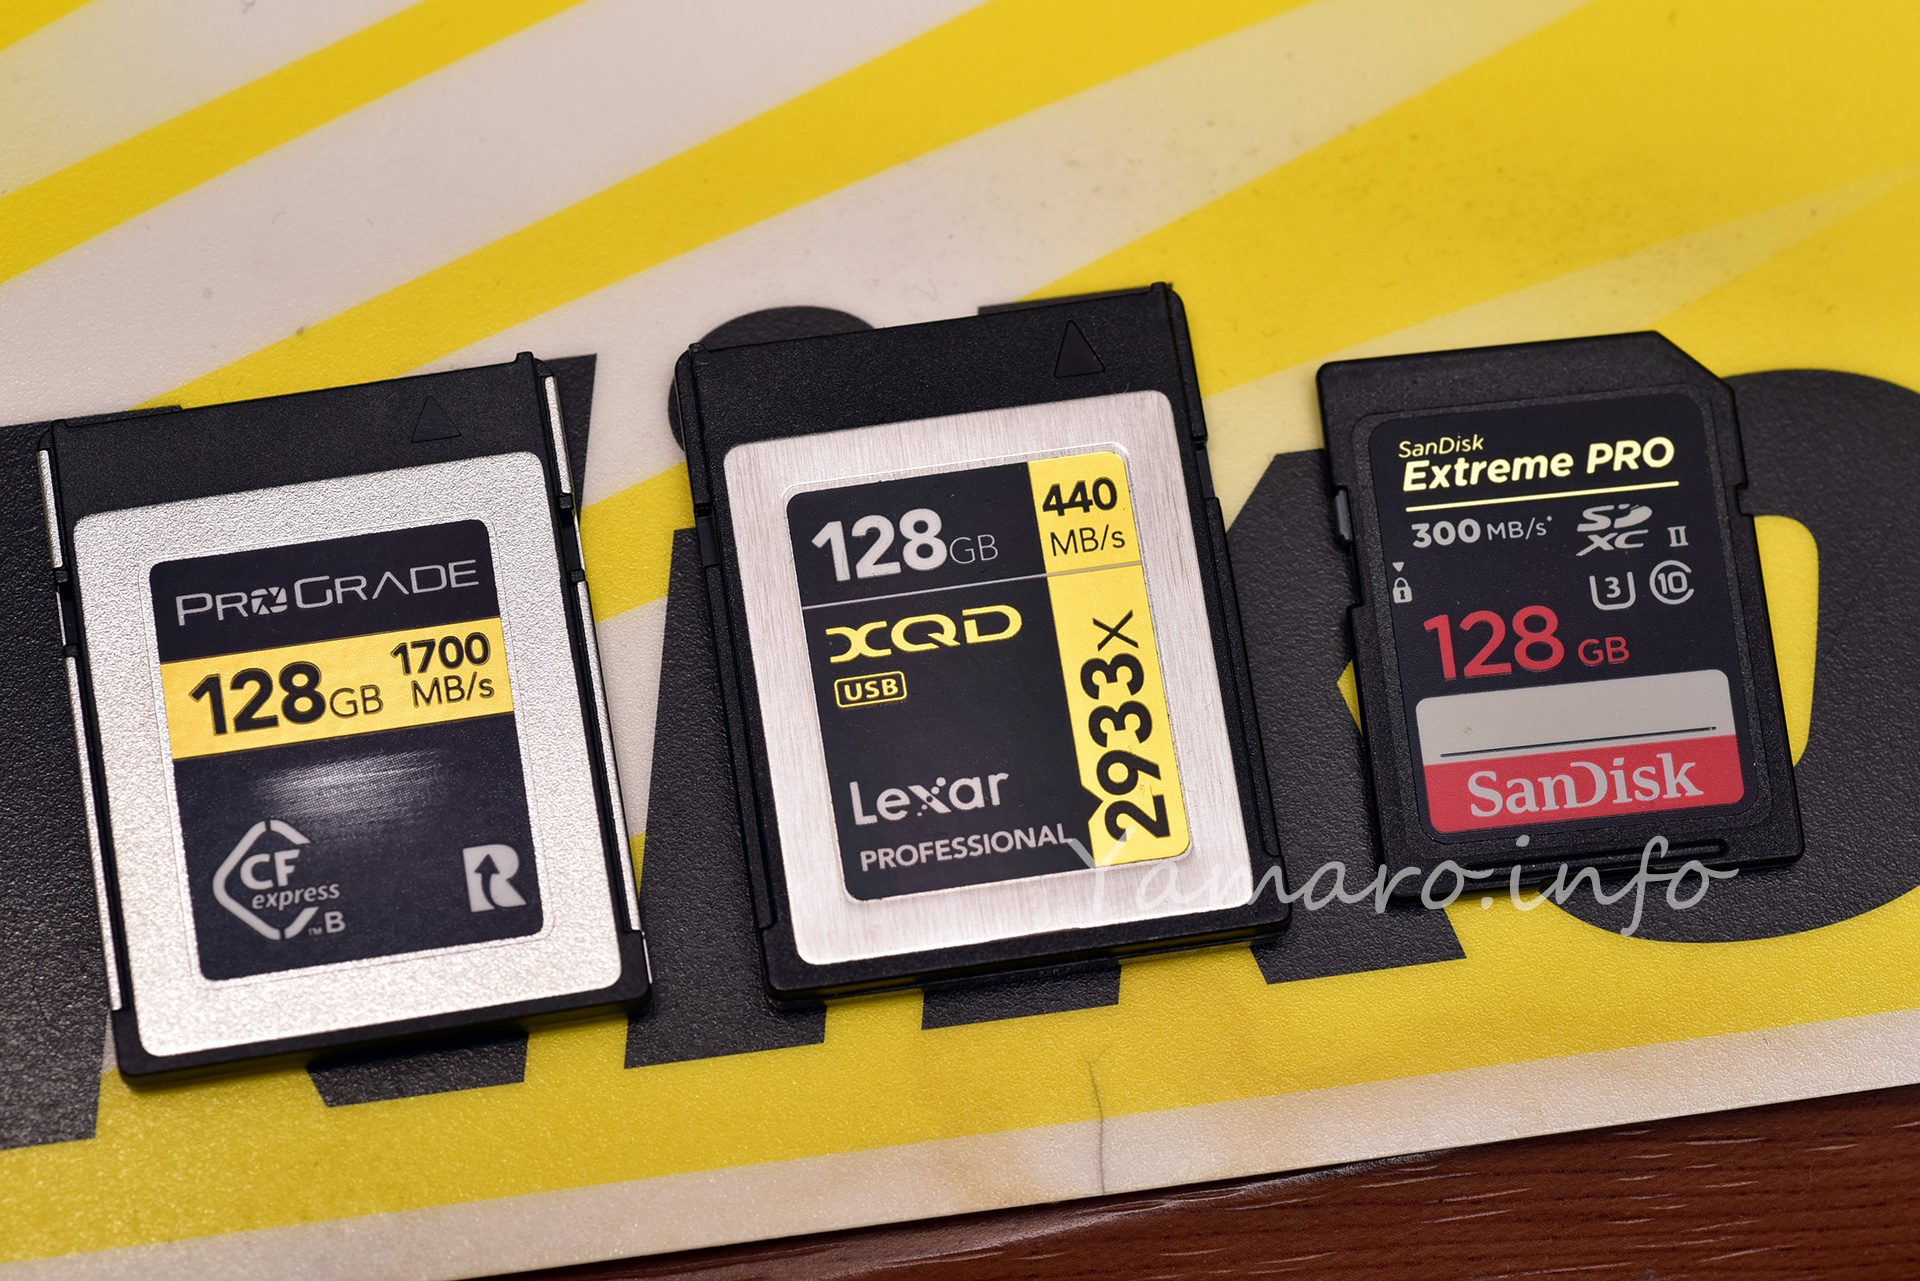 D850用にCFexpressカードを買ってみたのでXQD, SDと連写比較してみた - Blog@yamaro.info